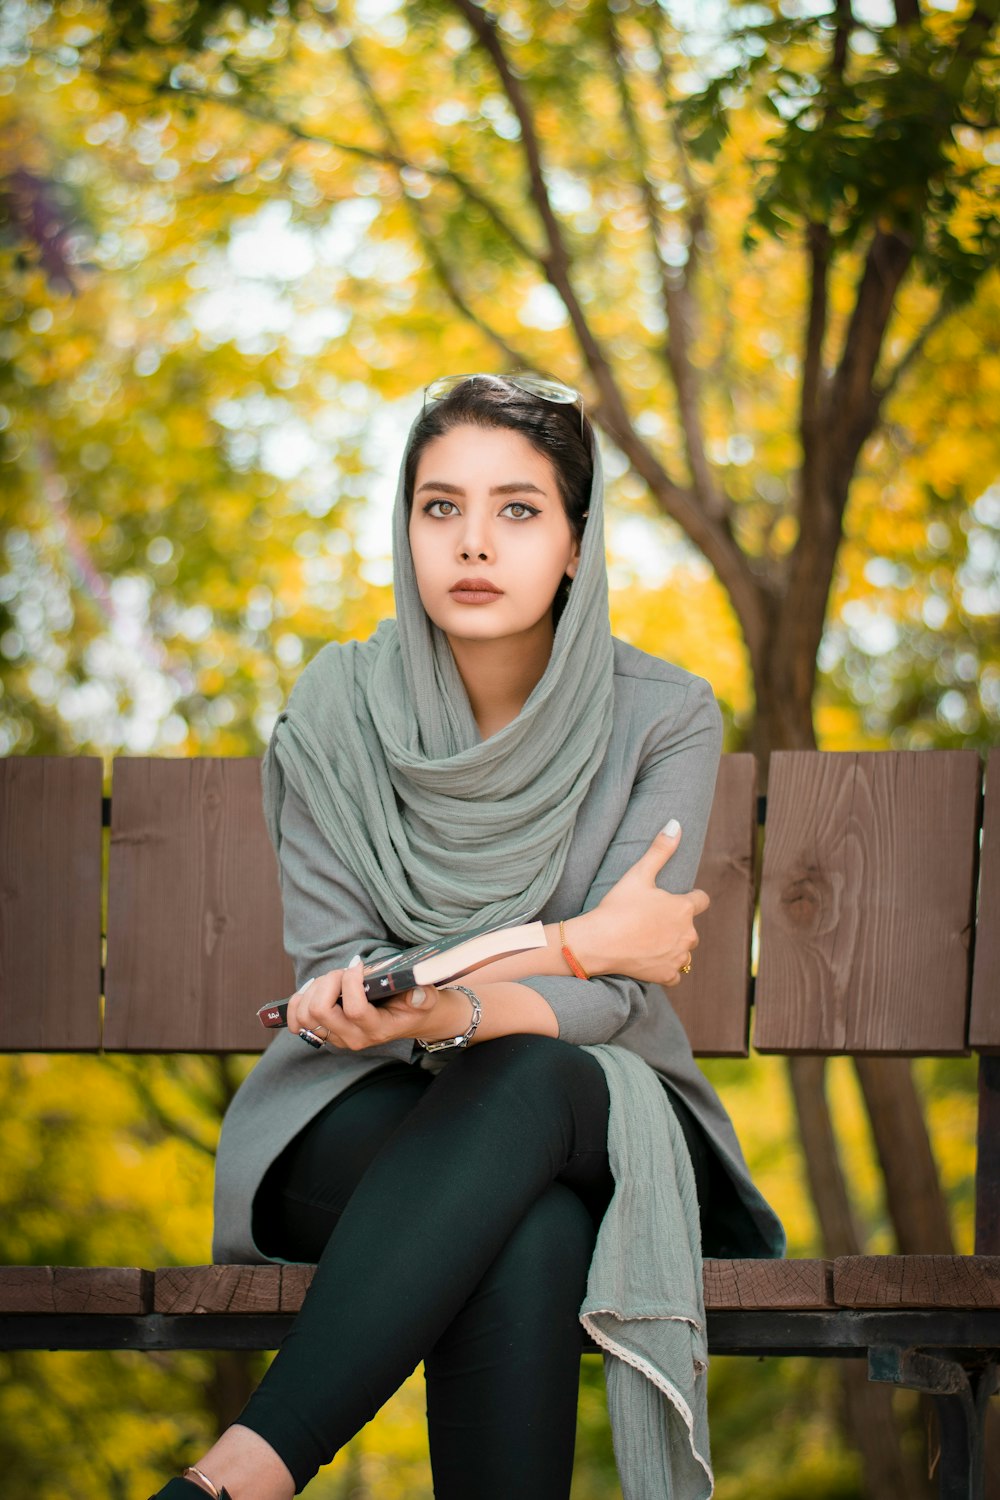 Femme en hijab gris et leggings noirs assis sur un banc en bois marron